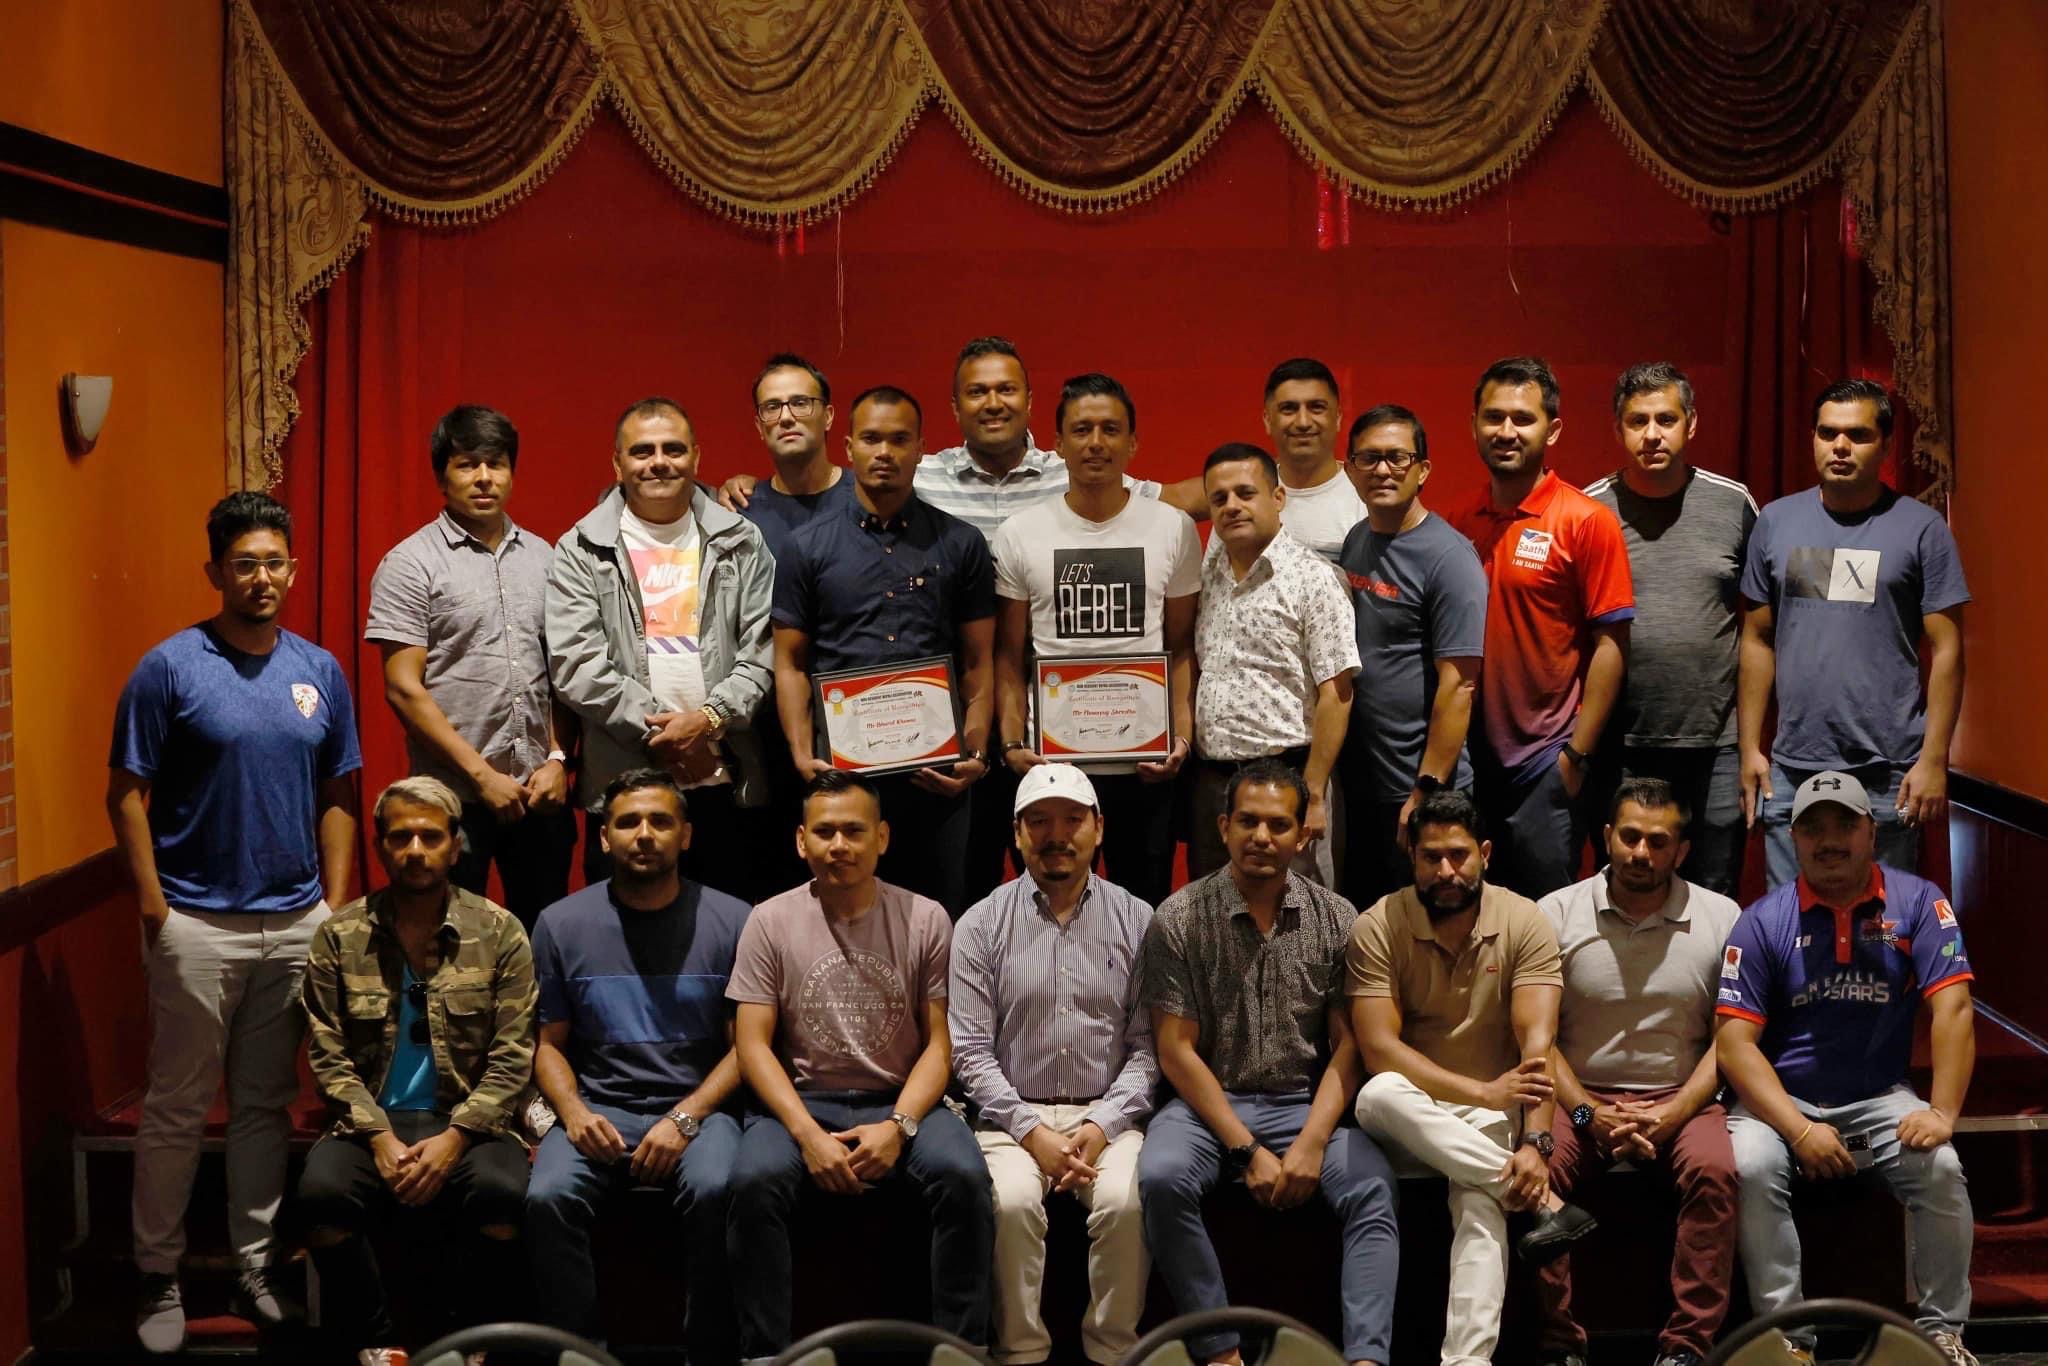 नेपाली राष्ट्रिय फुटबल टिमका खेलाडिहरु कप्तान नवयुग श्रेष्ठ र स्ट्राइकर भरत खवास लाई सम्मान पत्र हस्तातरण।